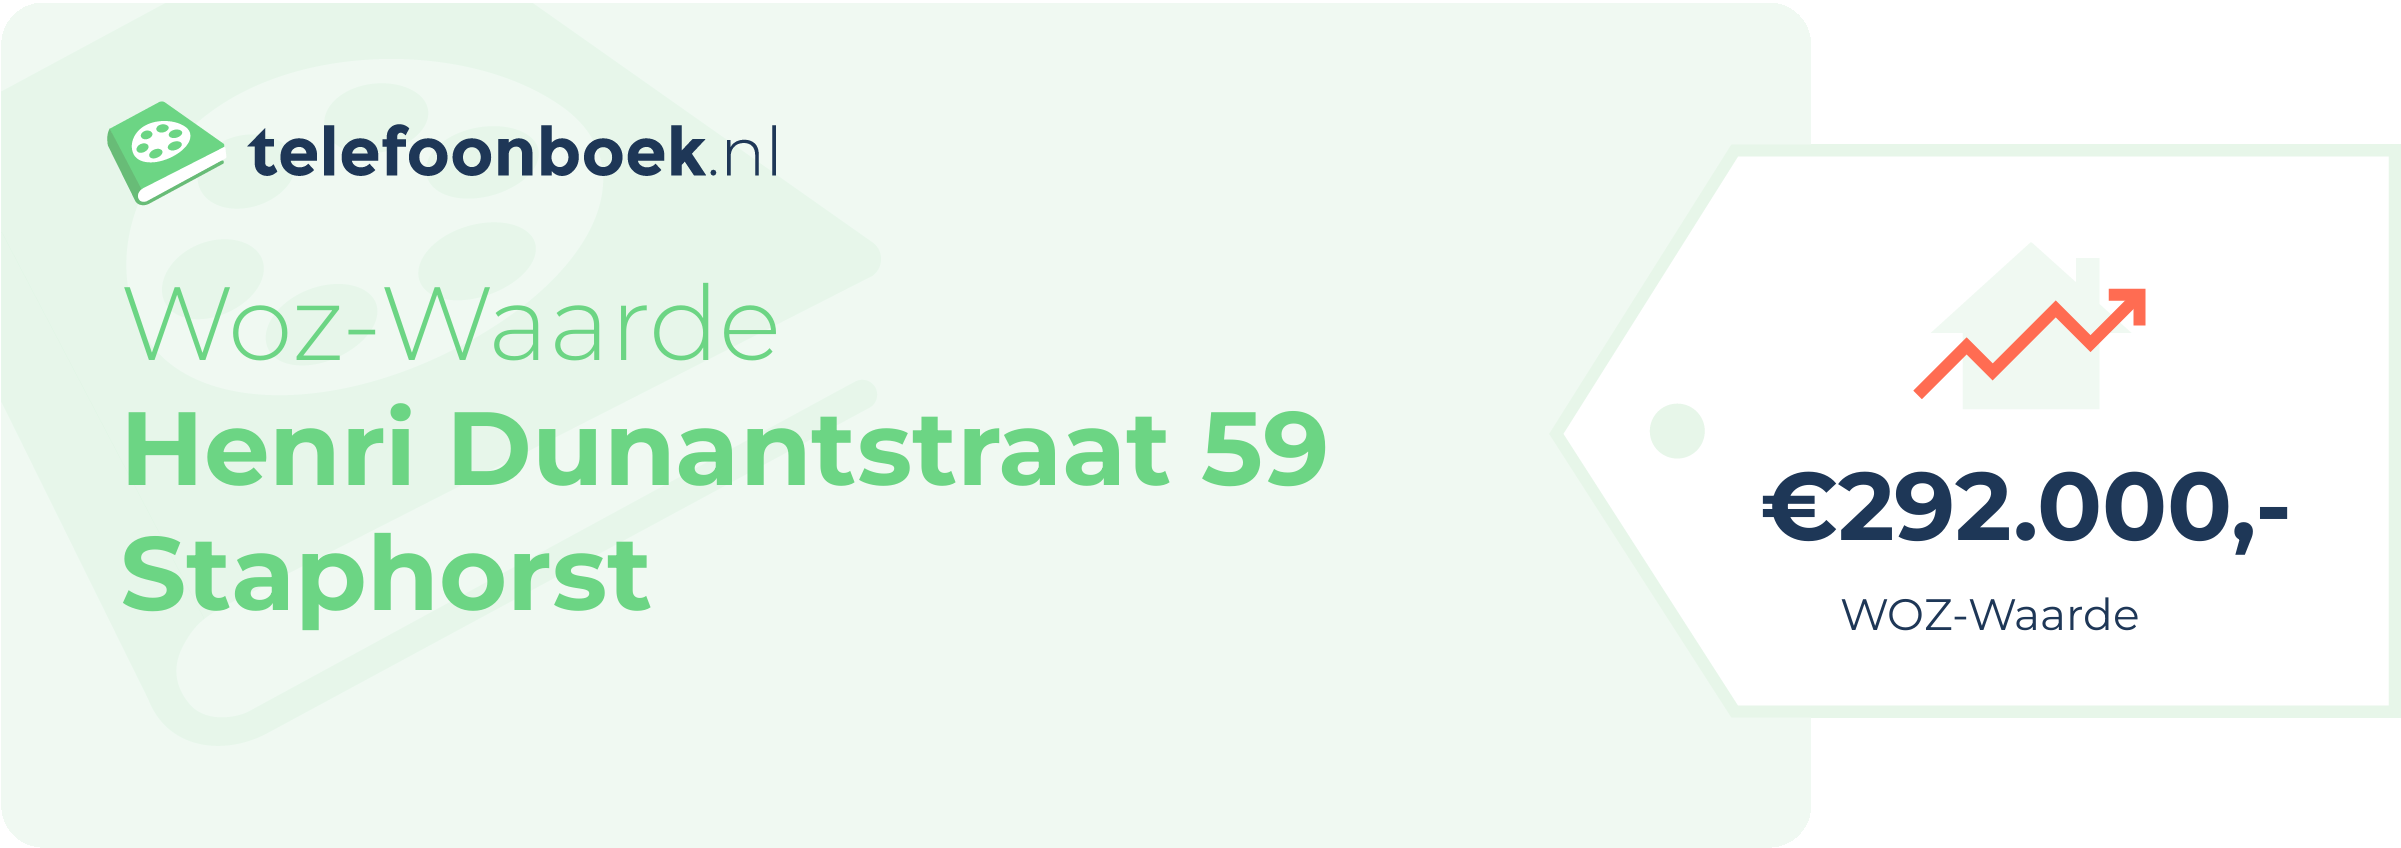 WOZ-waarde Henri Dunantstraat 59 Staphorst